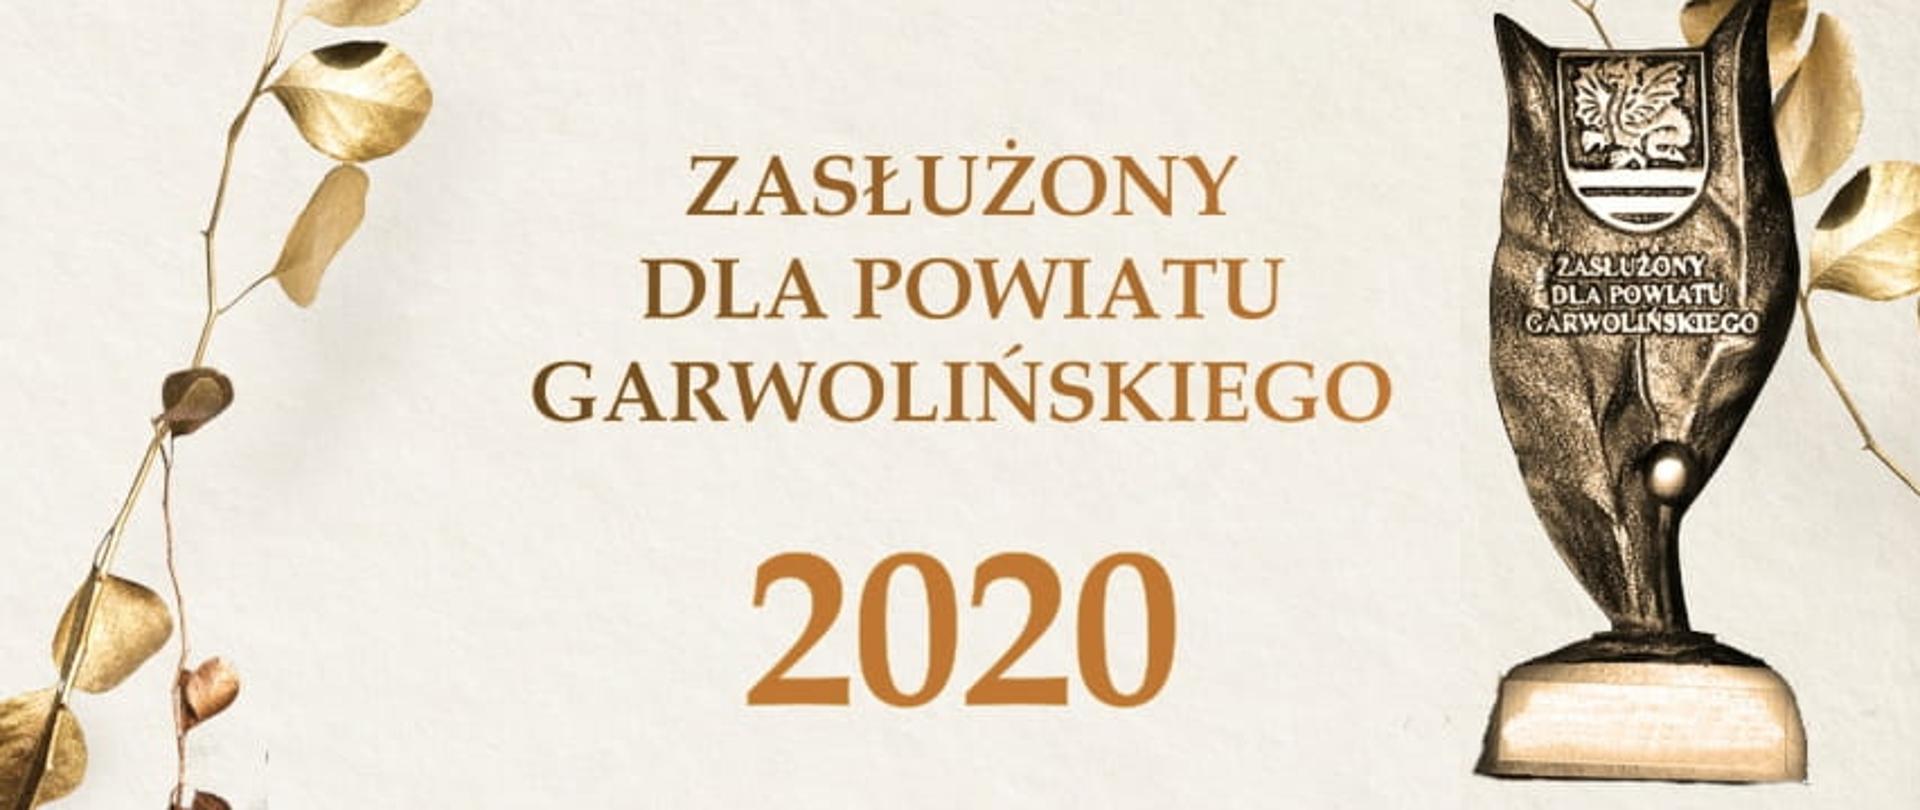 Zasłużony dla Powiatu Garwolińskiego 2020